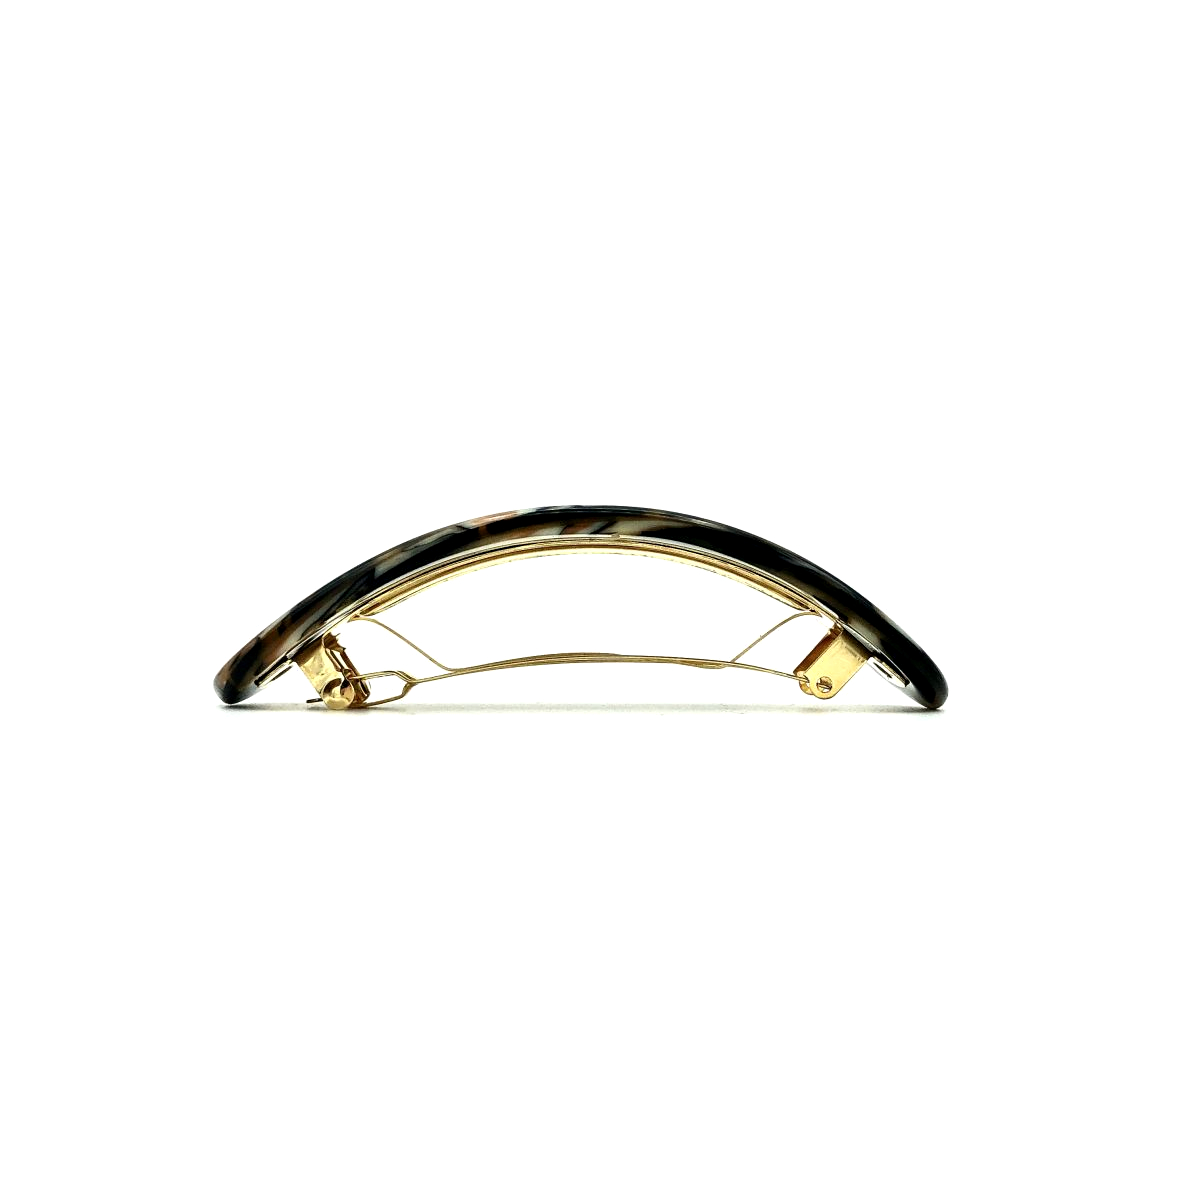 Haarspange gold/schwarz - groß, gebogen,paralleloval -  9,5 cm